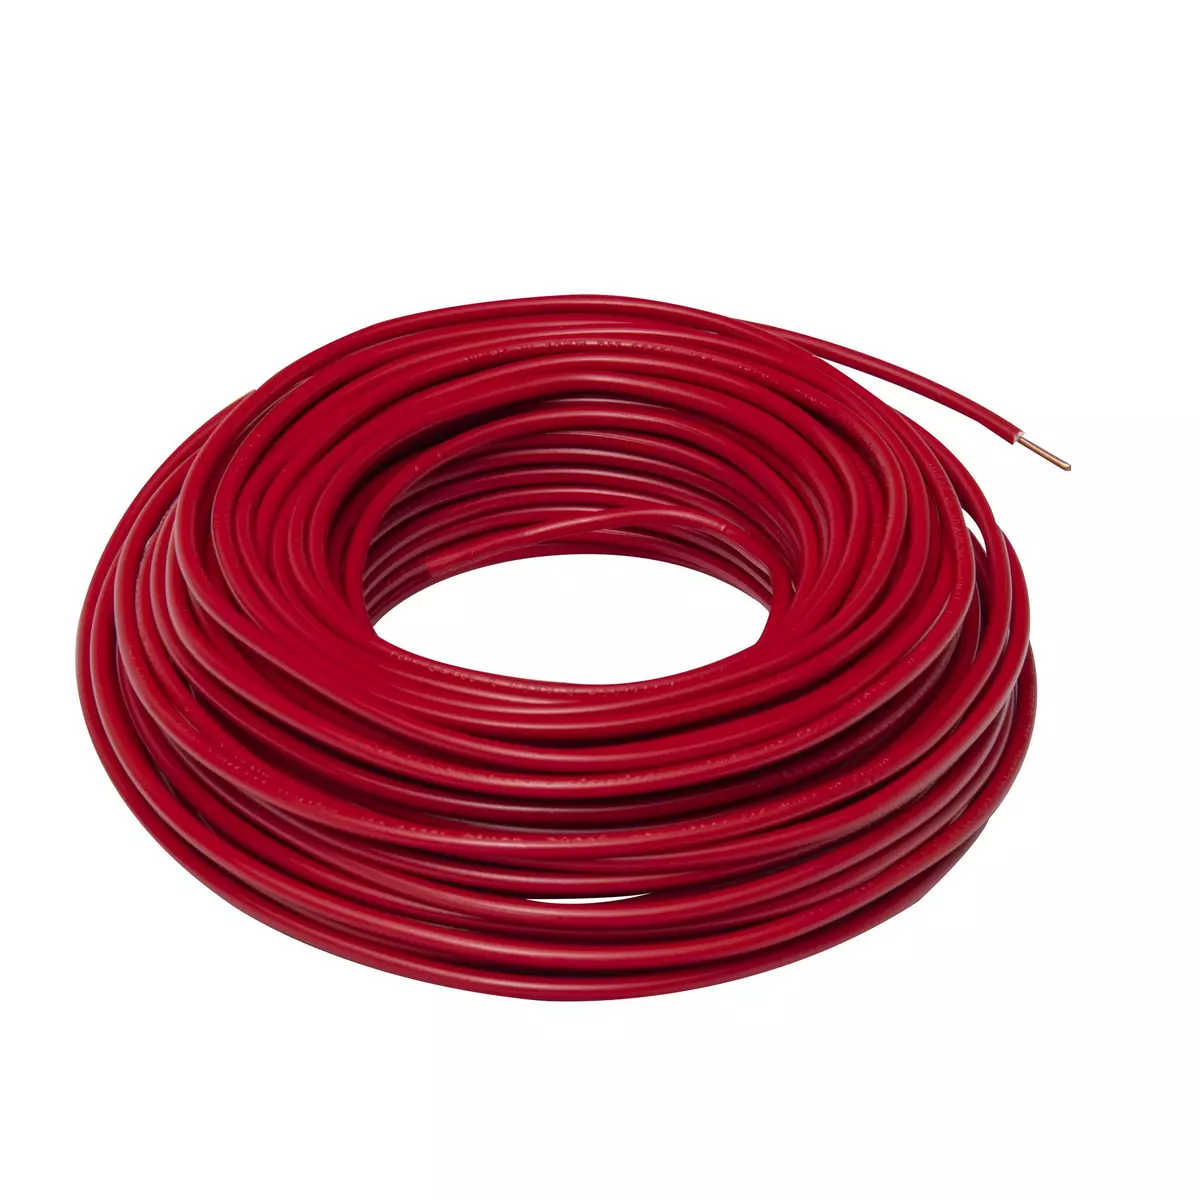 ZENITECH Câble électrique HO7V-U 1,5 mm2 rouge 25 m